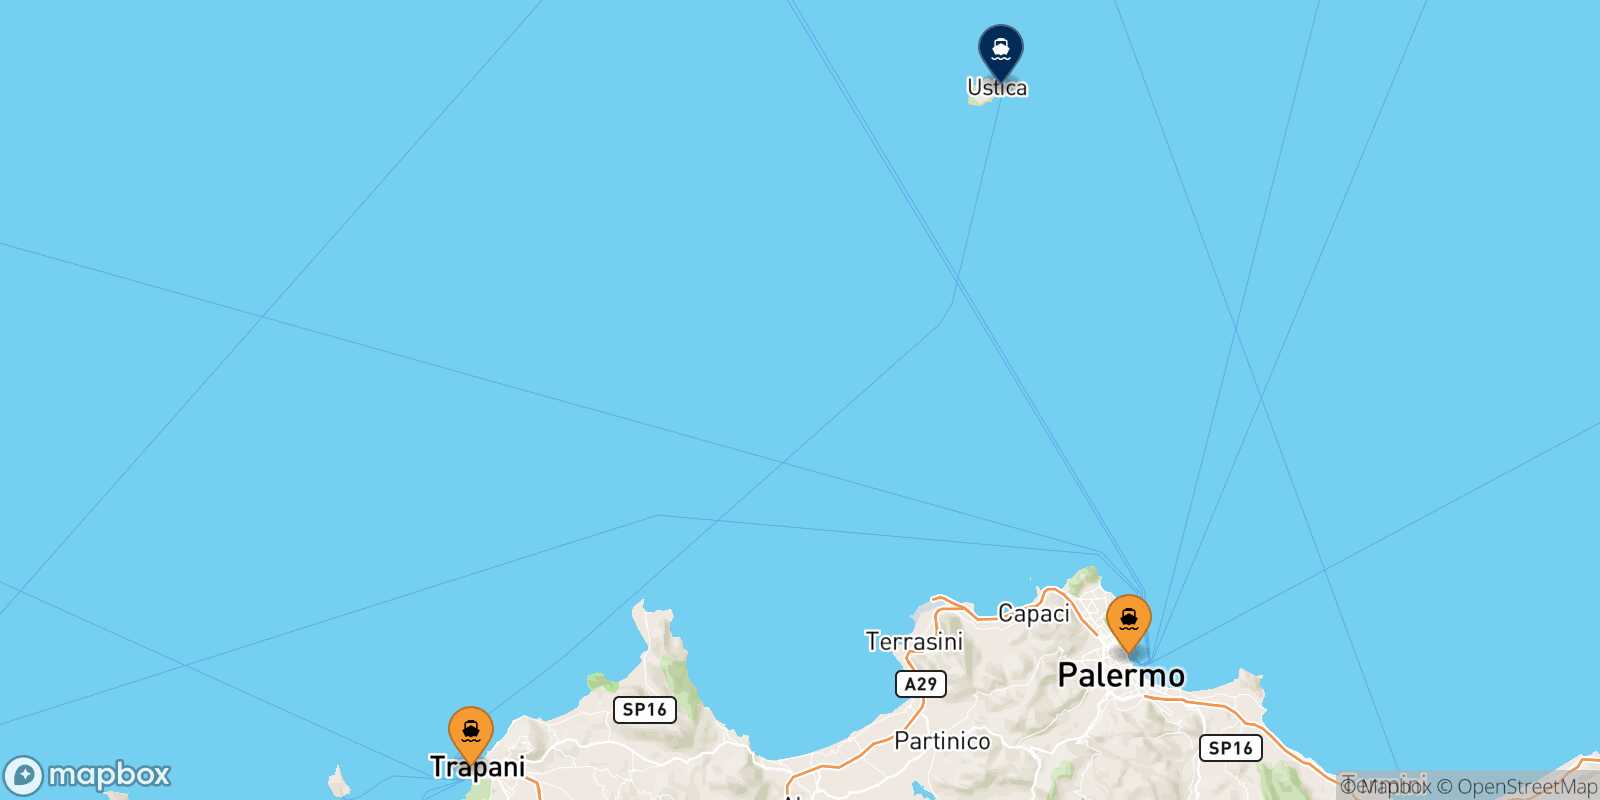 Mappa dei porti collegati con  Ustica